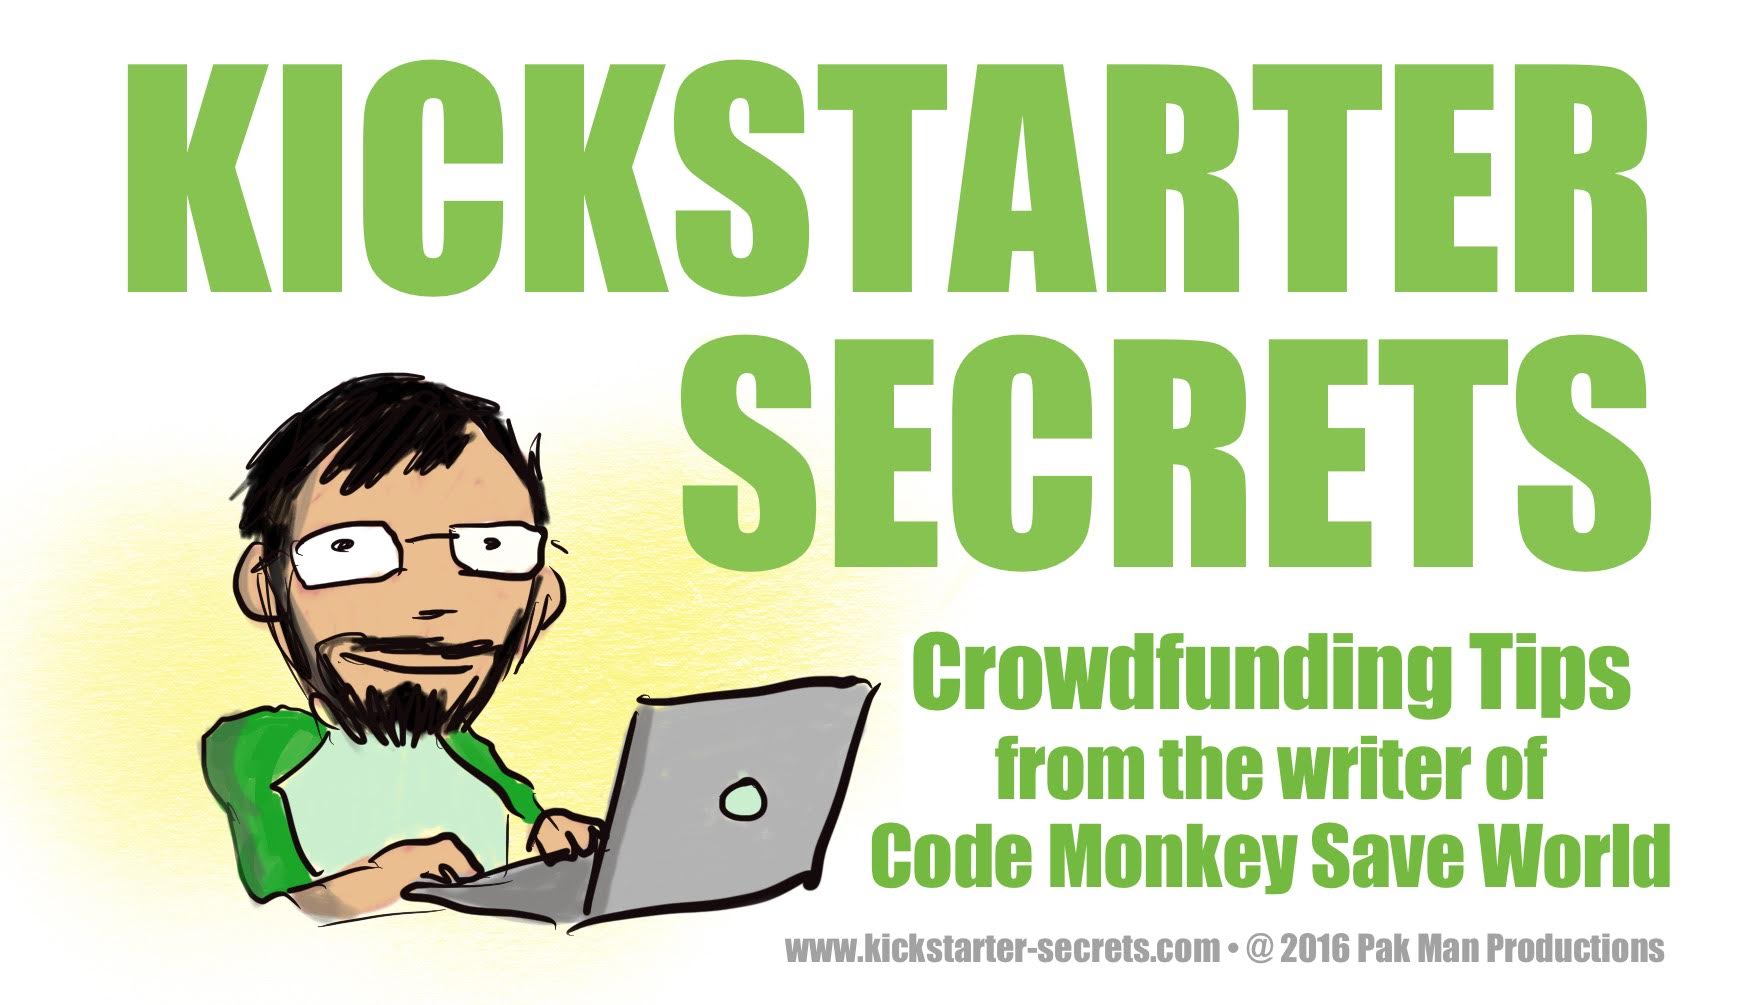 Kickstarter Secrets